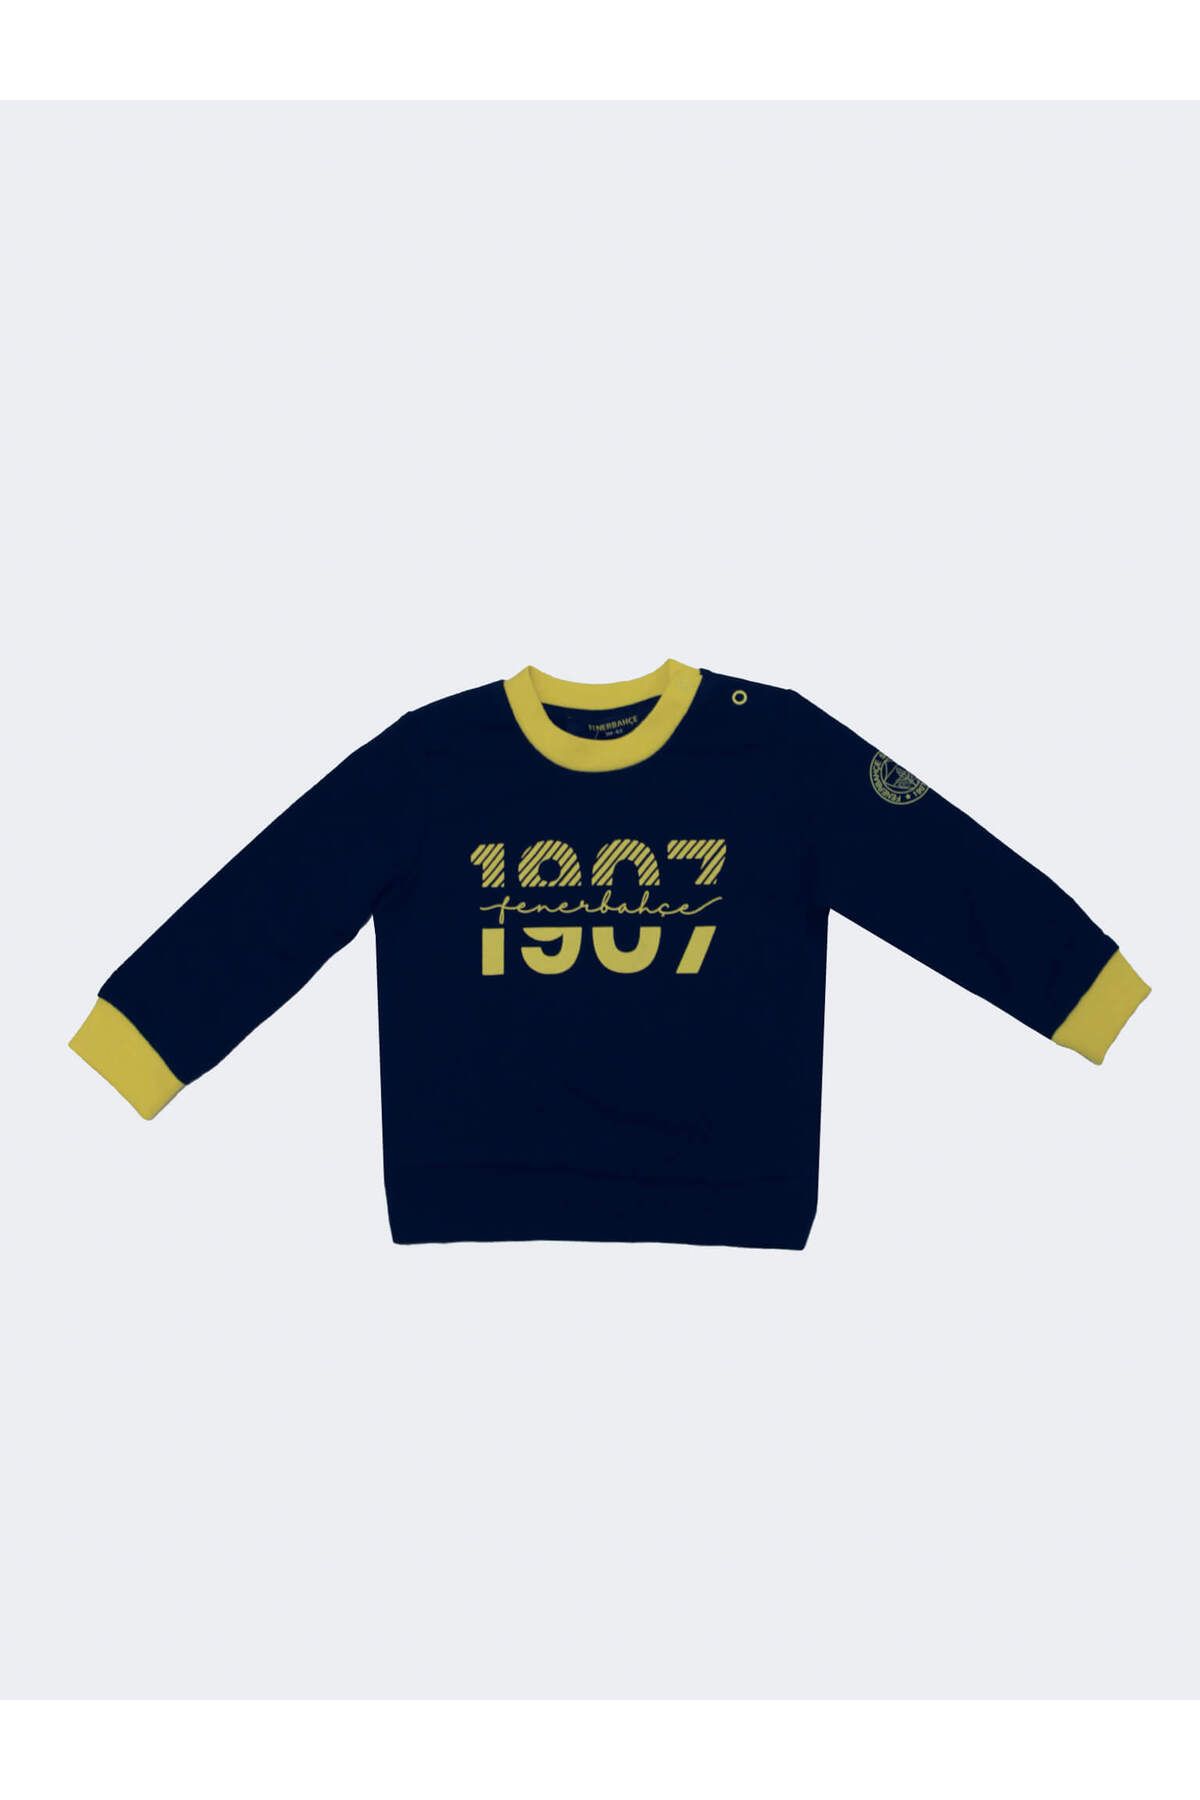 Fenerbahçe 1907 Sweatshırt